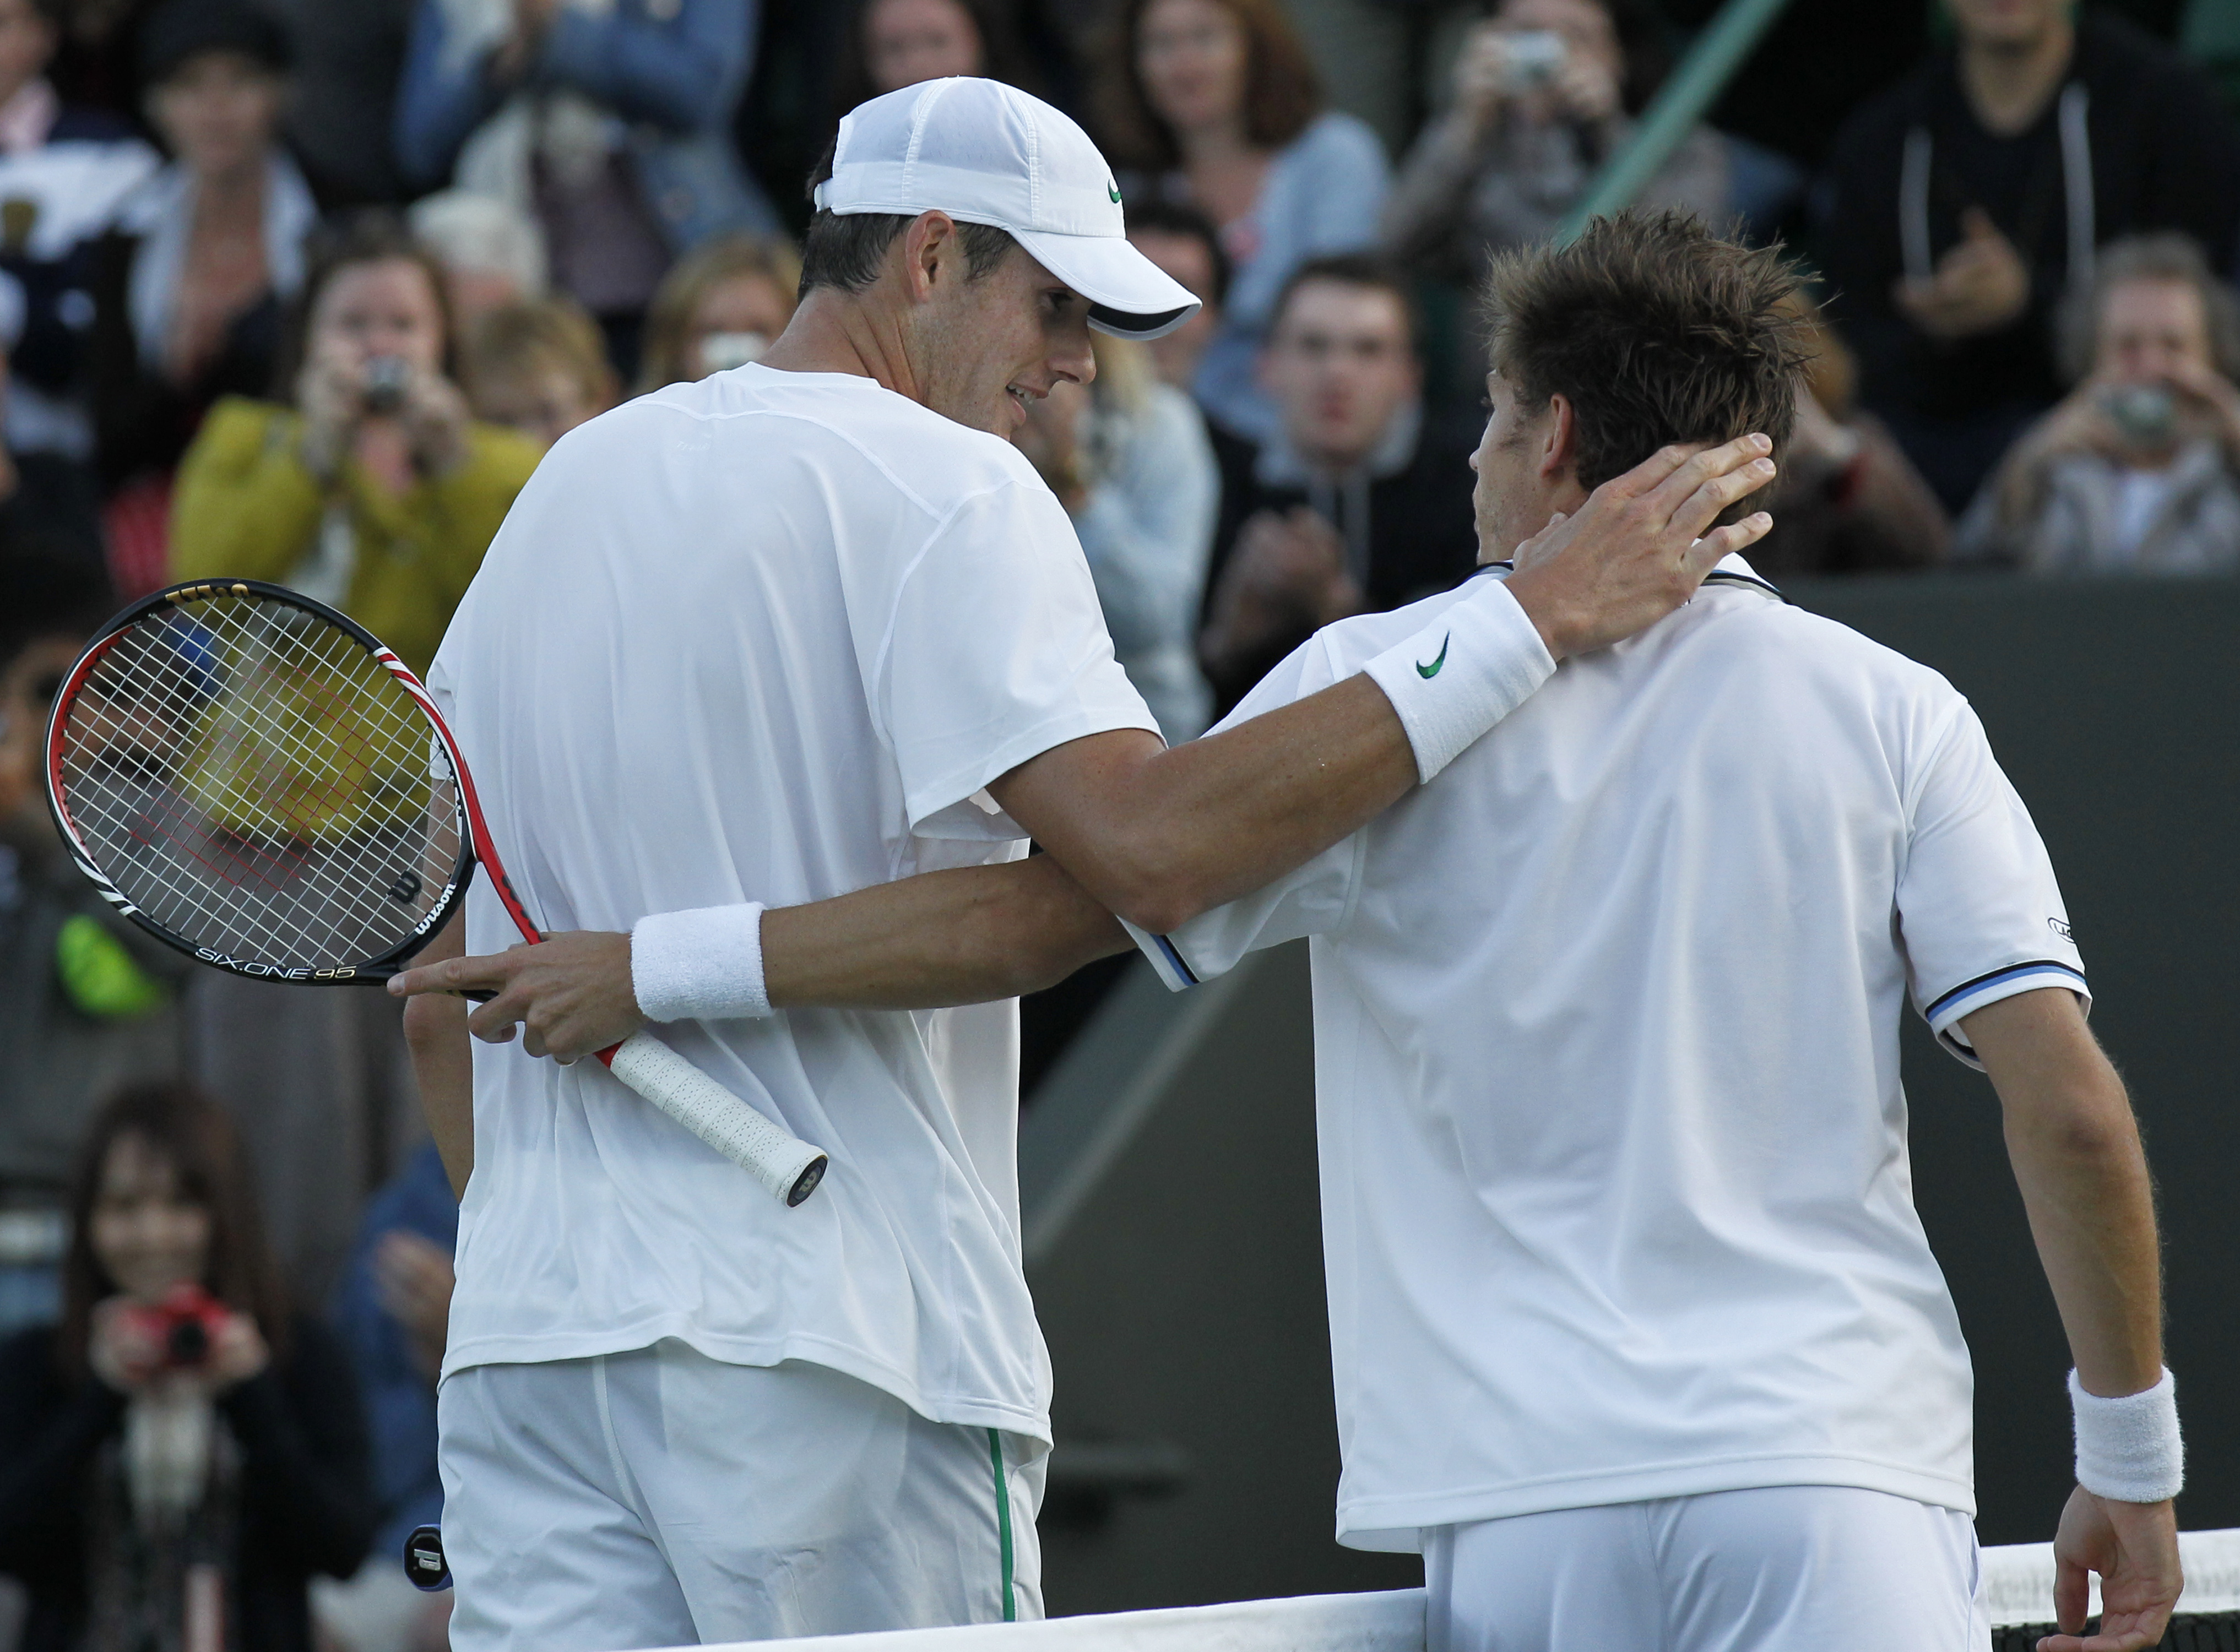 Surto História: Isner x Mahut e o jogo sem fim em Wimbledon - Surto Olímpico